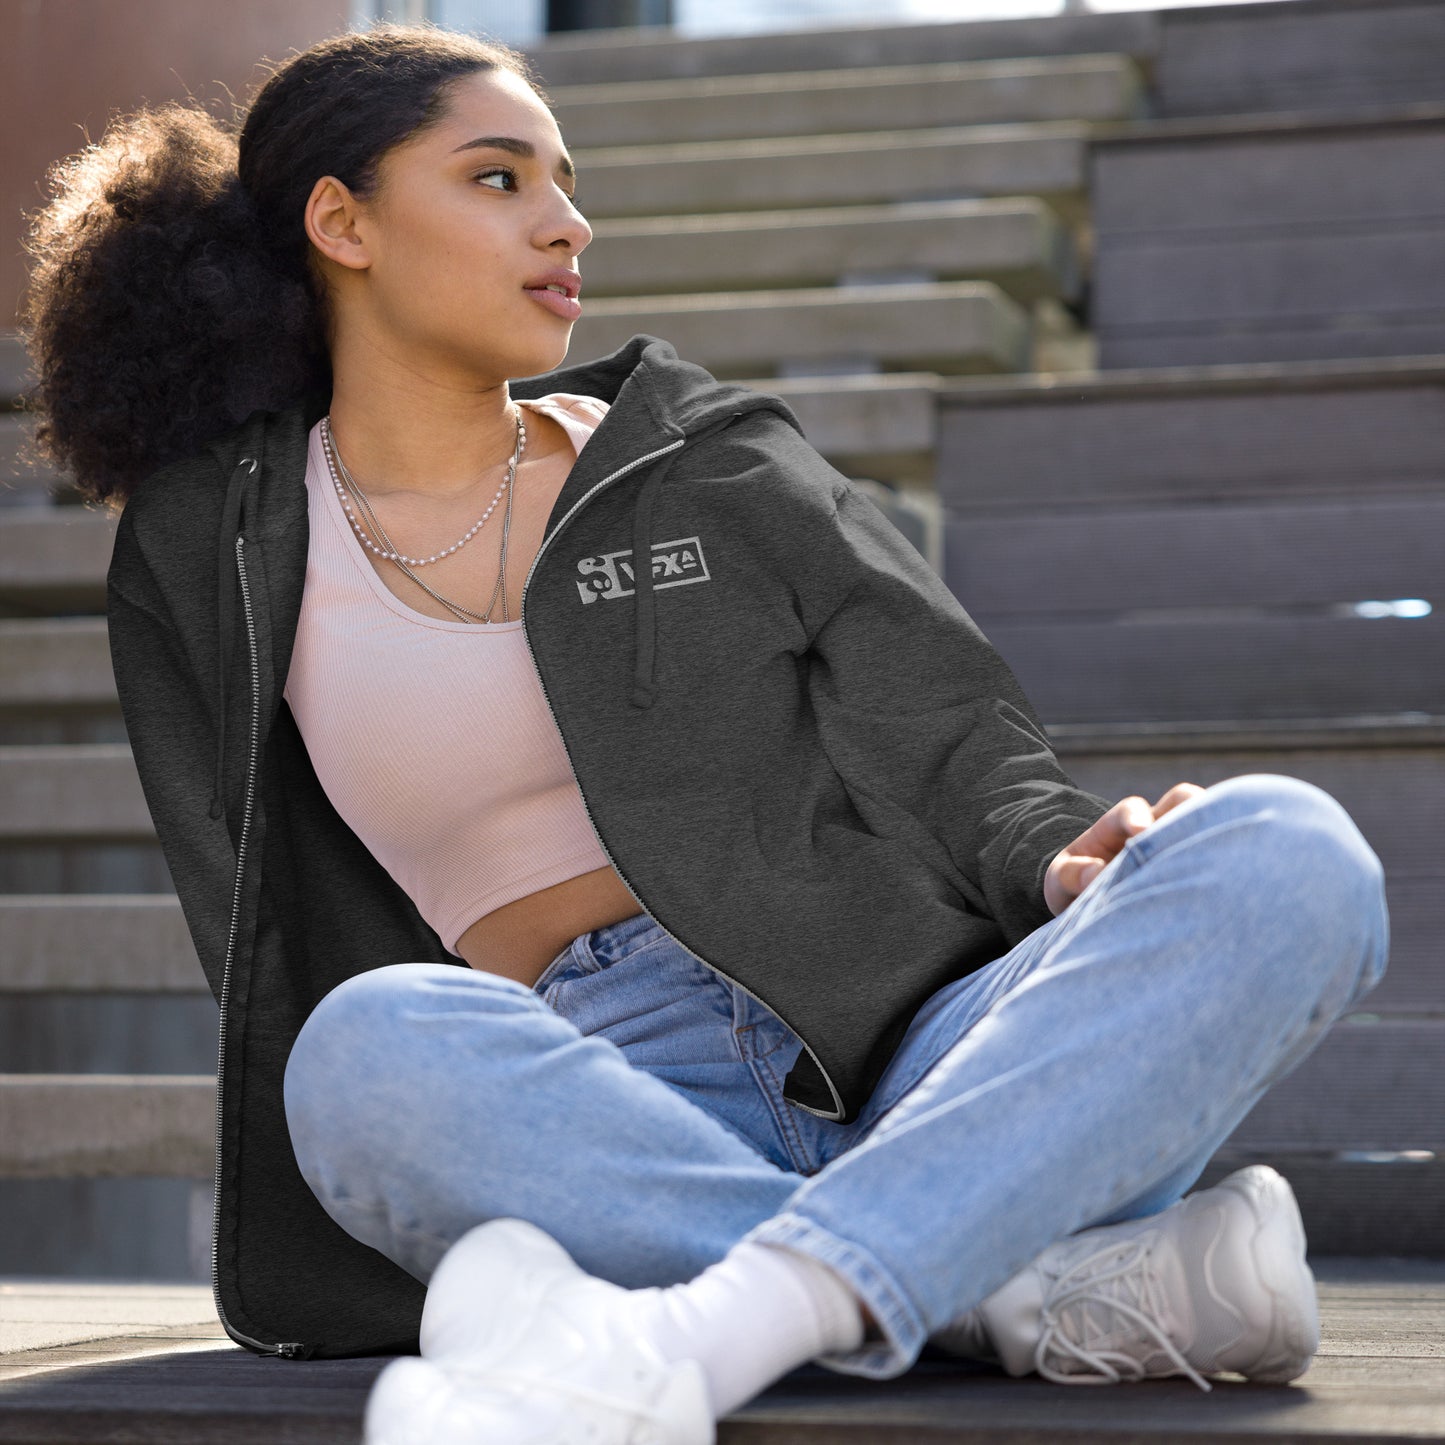 Unisex fleece zip up hoodie: Cozma